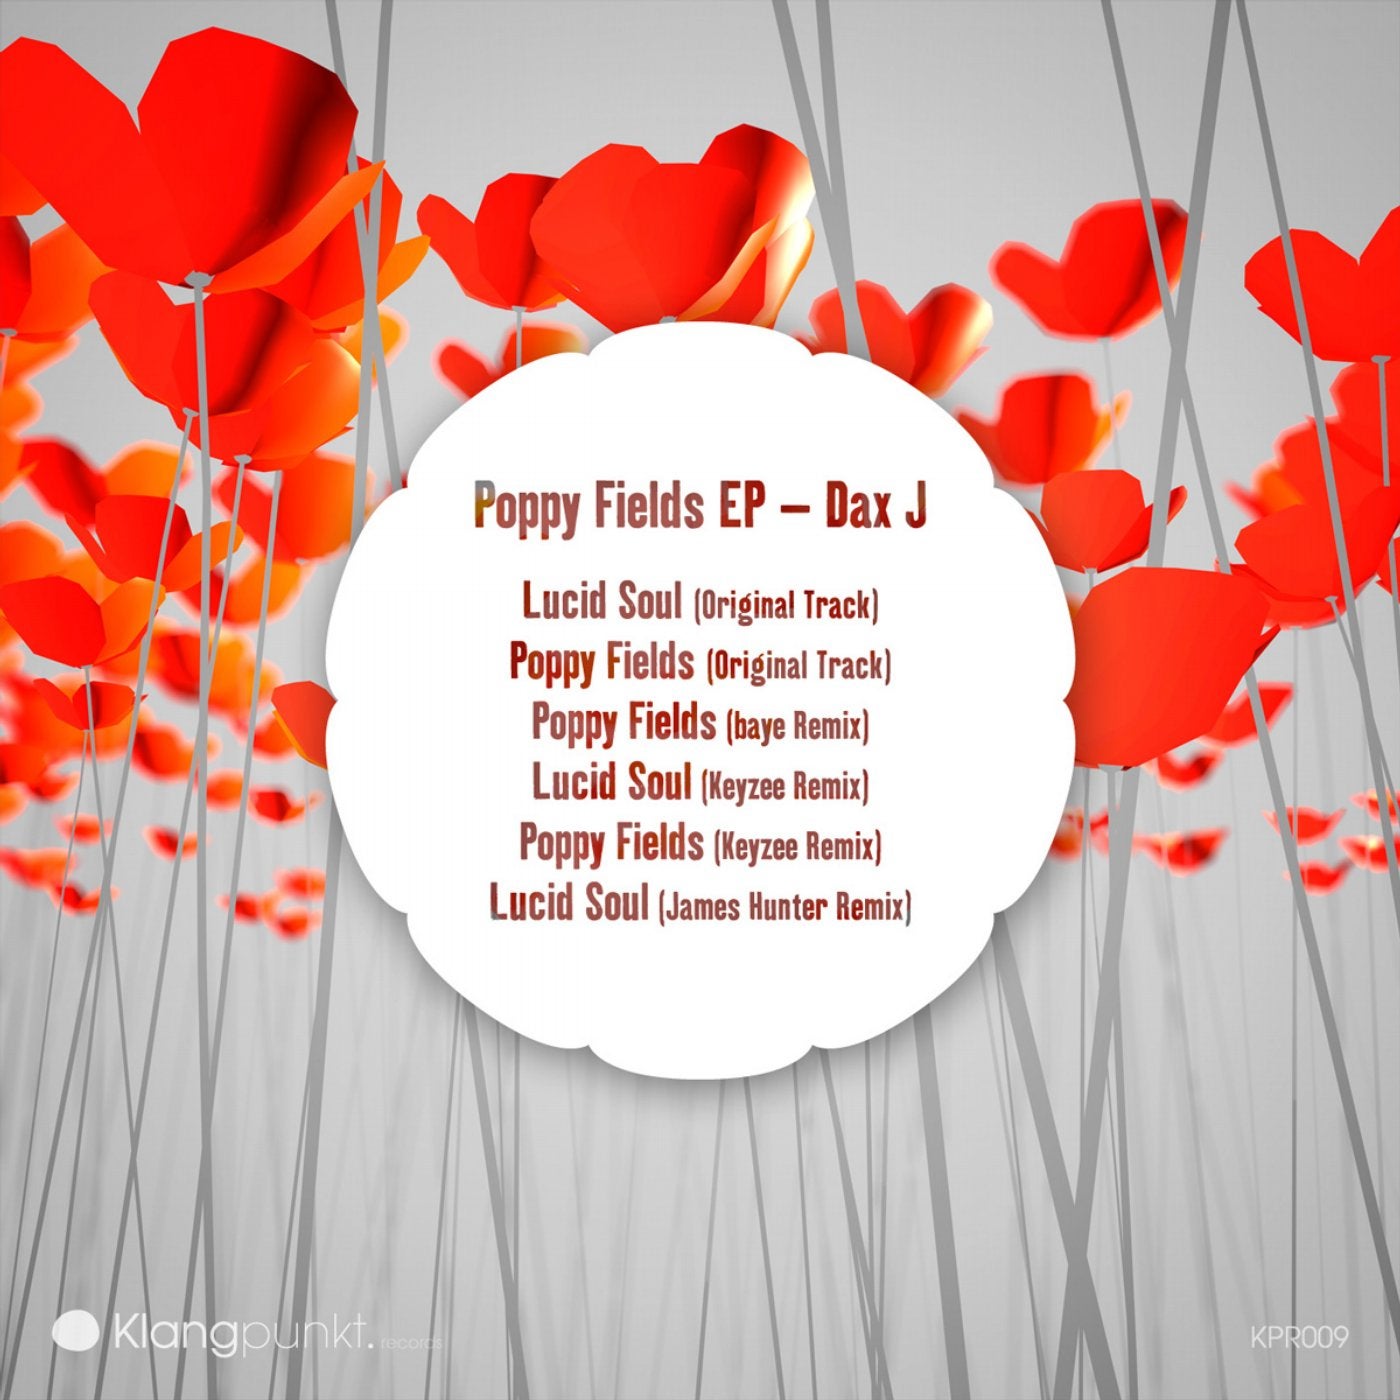 Poppy Fields EP